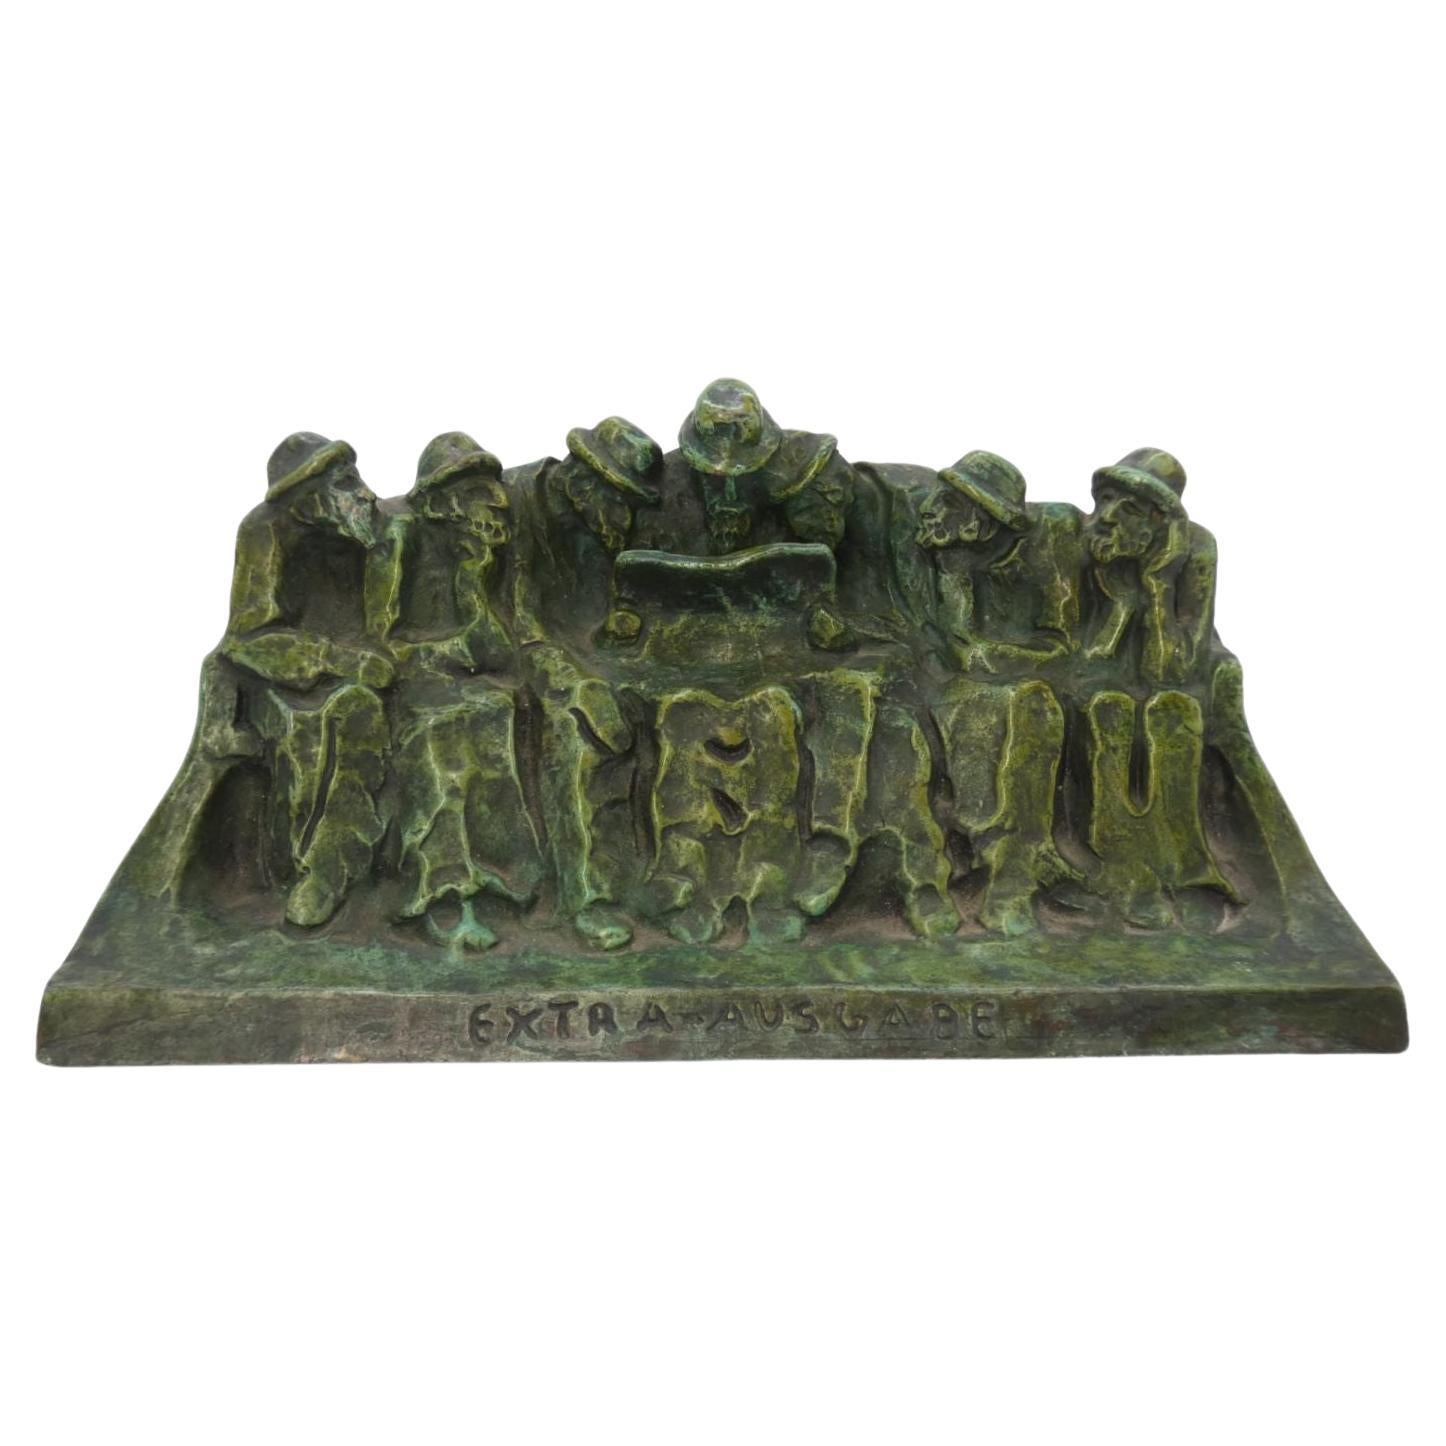 HÉLÈNE ZELEZNY-SCHOLTZ (1882-1974). A bronze sculpture “Reading of the newspaper For Sale